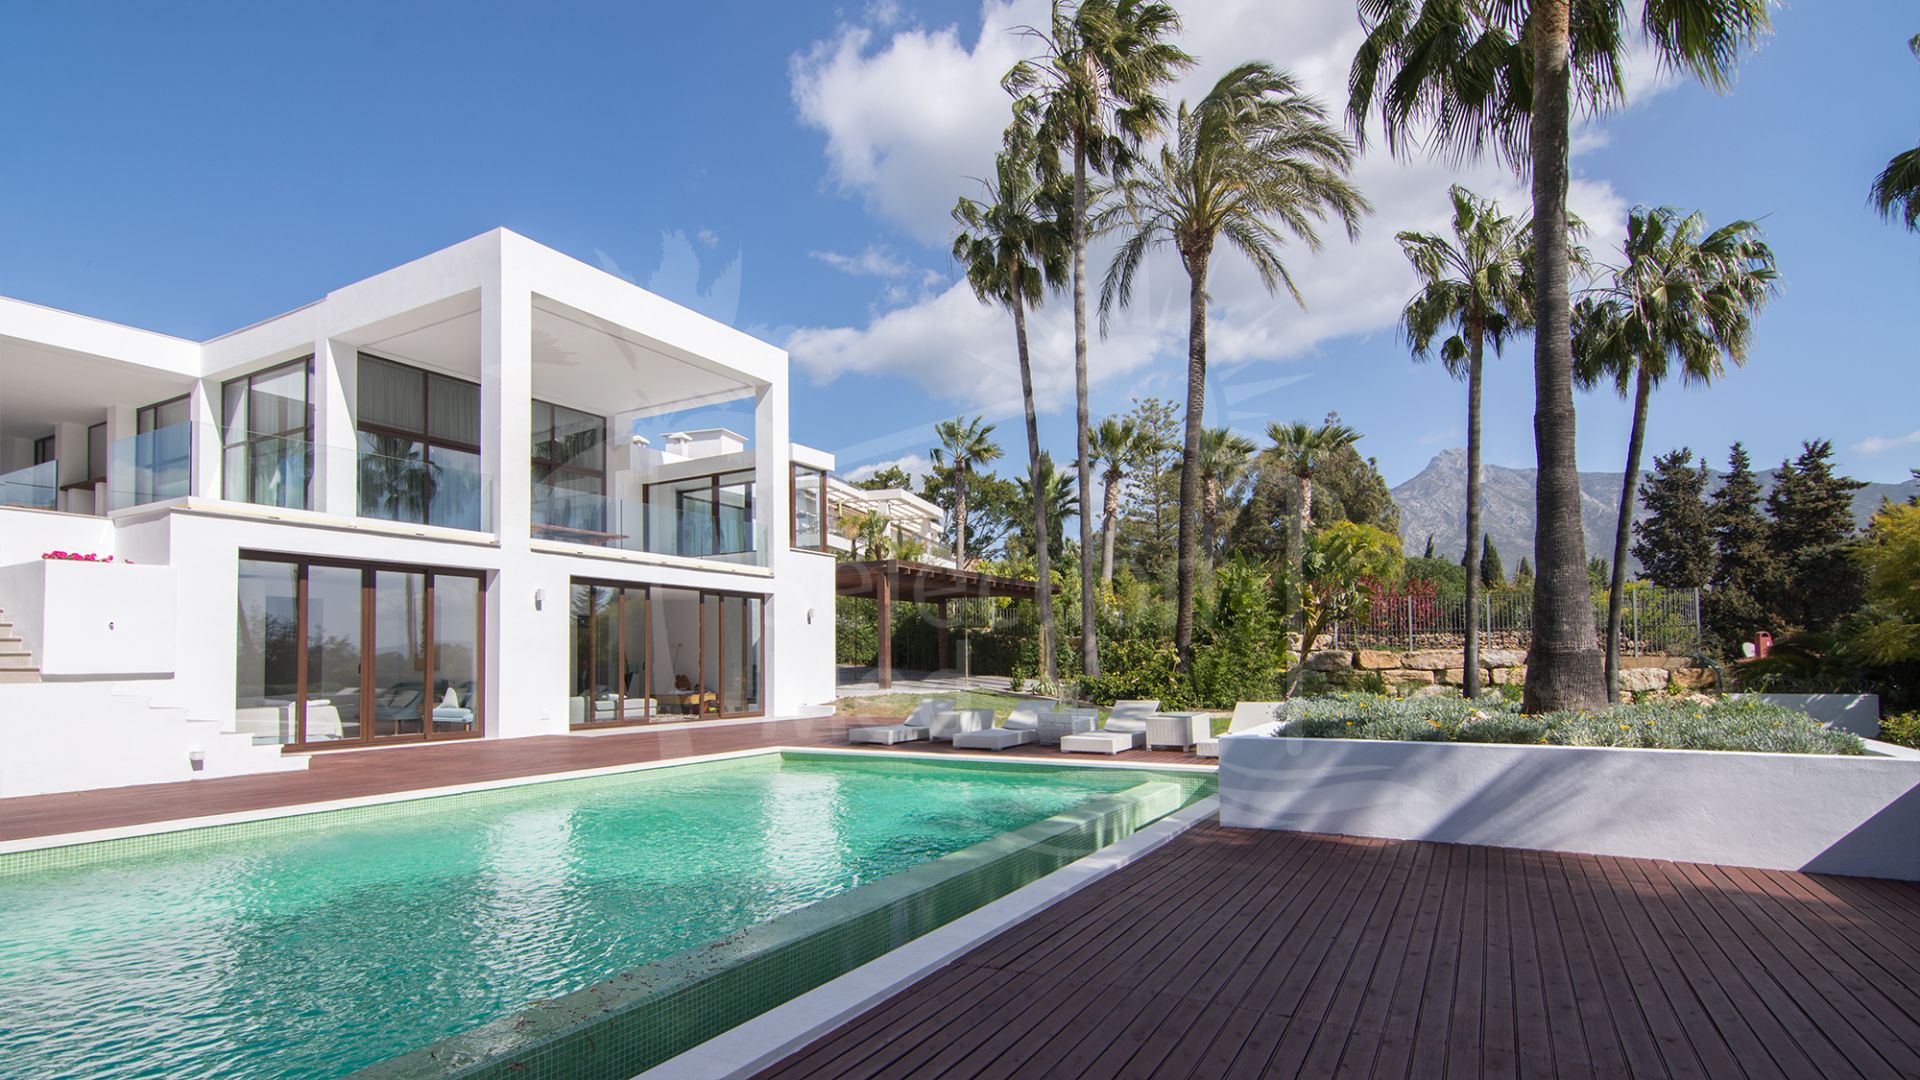 6 Bedrooms Villas with Unique Design, Rio Verde, Marbella